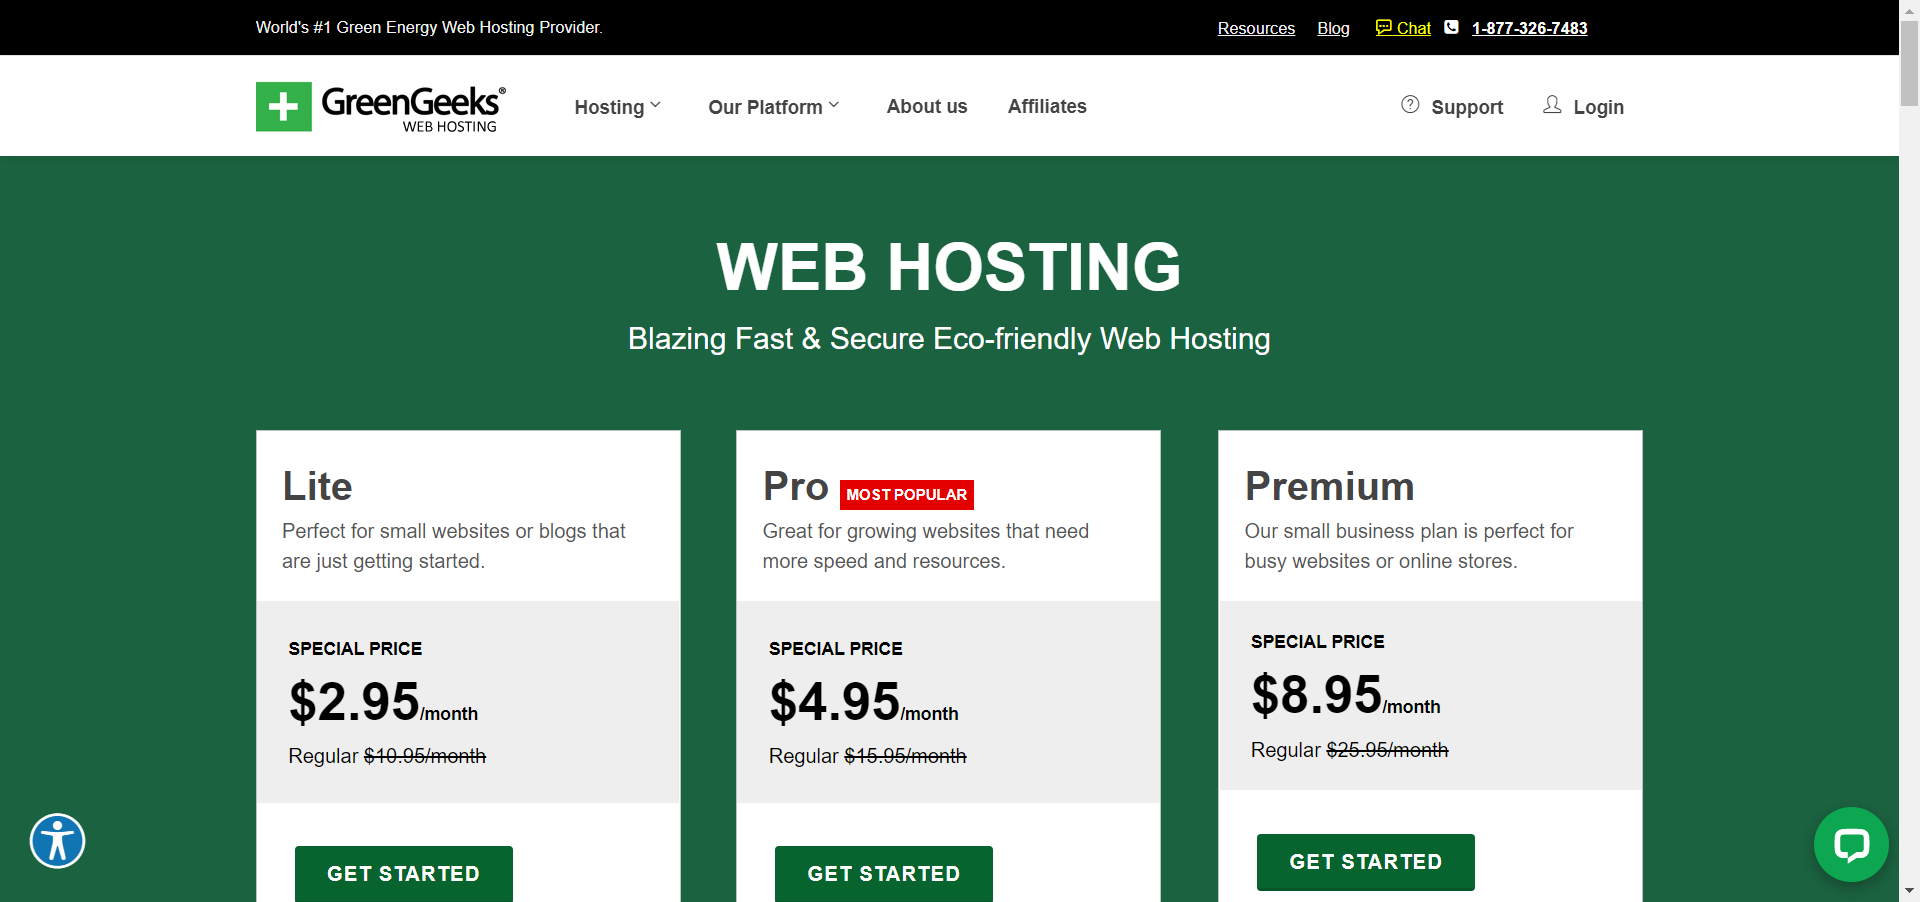 GreenGeeks Web Hosting pricing